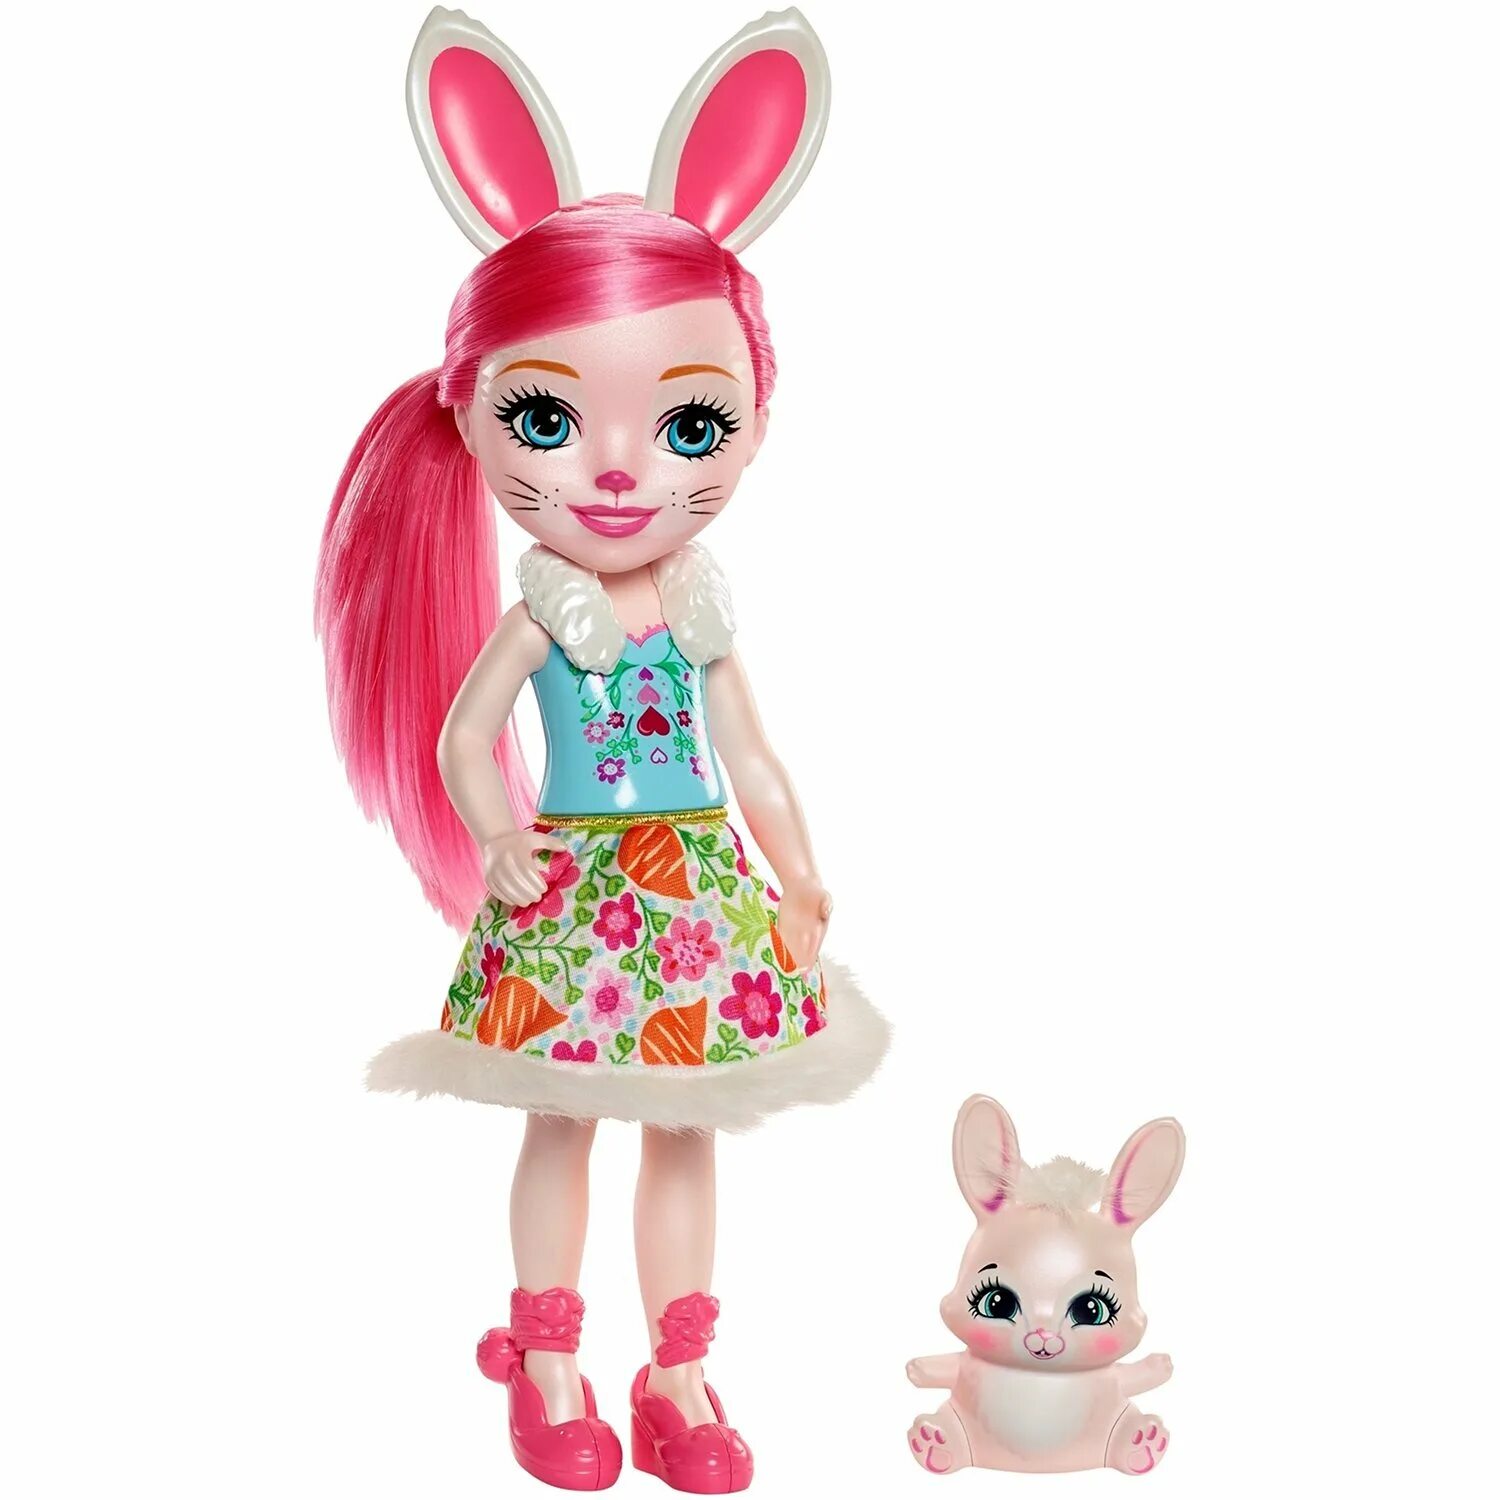 Энченчималс. Кукла Enchantimals Bree Bunny. Кукла Энчантималс Бри кроля и Твист. Большая кукла Энчантималс. Кукла Mattel Enchantimals с питомцем.